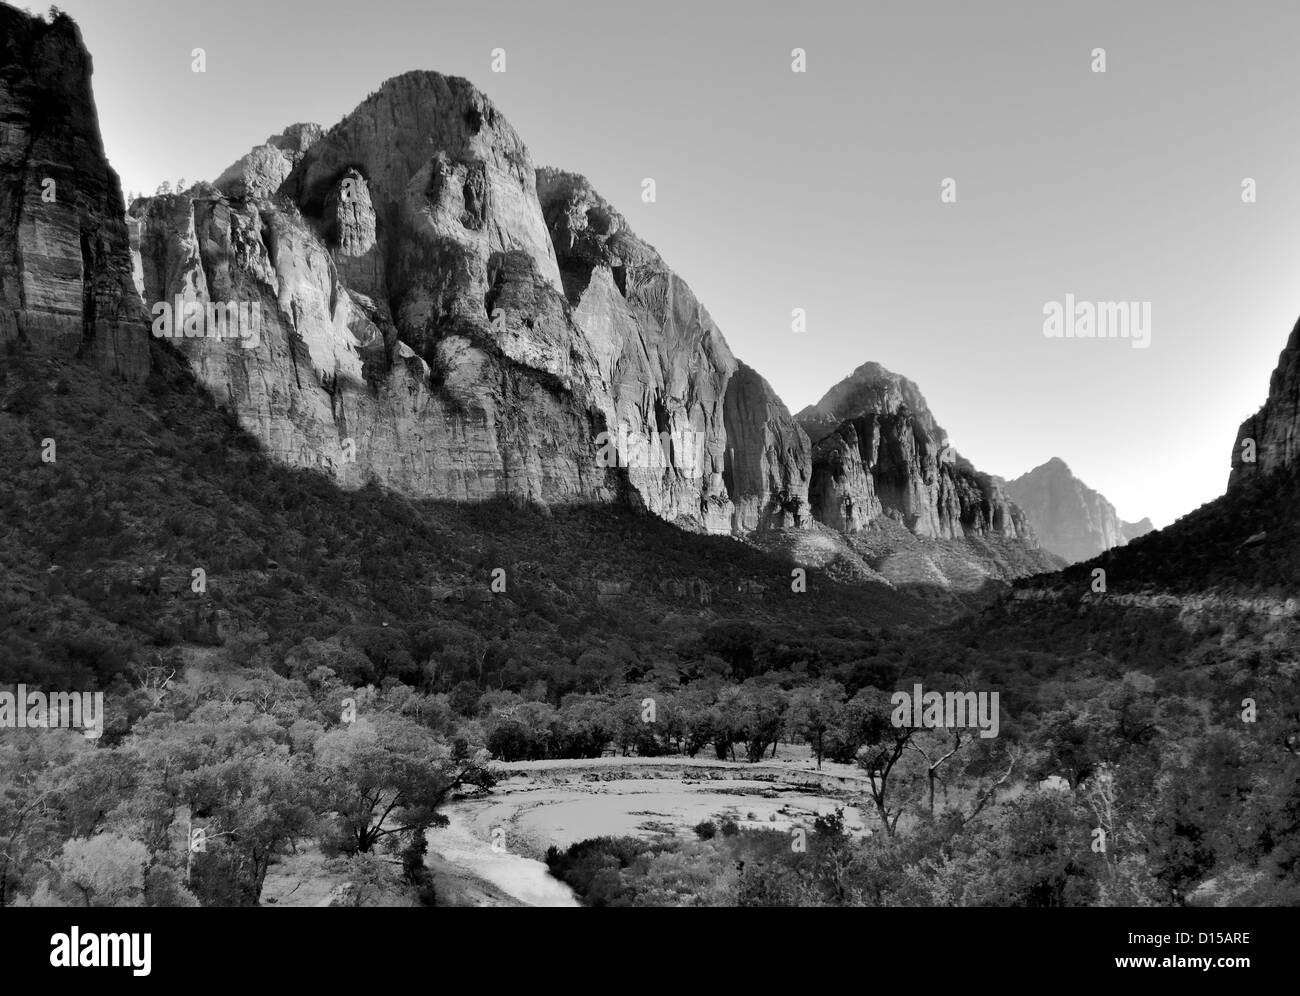 'The Watchman' Zion National Park - Utah, USA der Virgin River schlängelt sich durch das Tal., Schwarz-Weiß-Bild Stockfoto